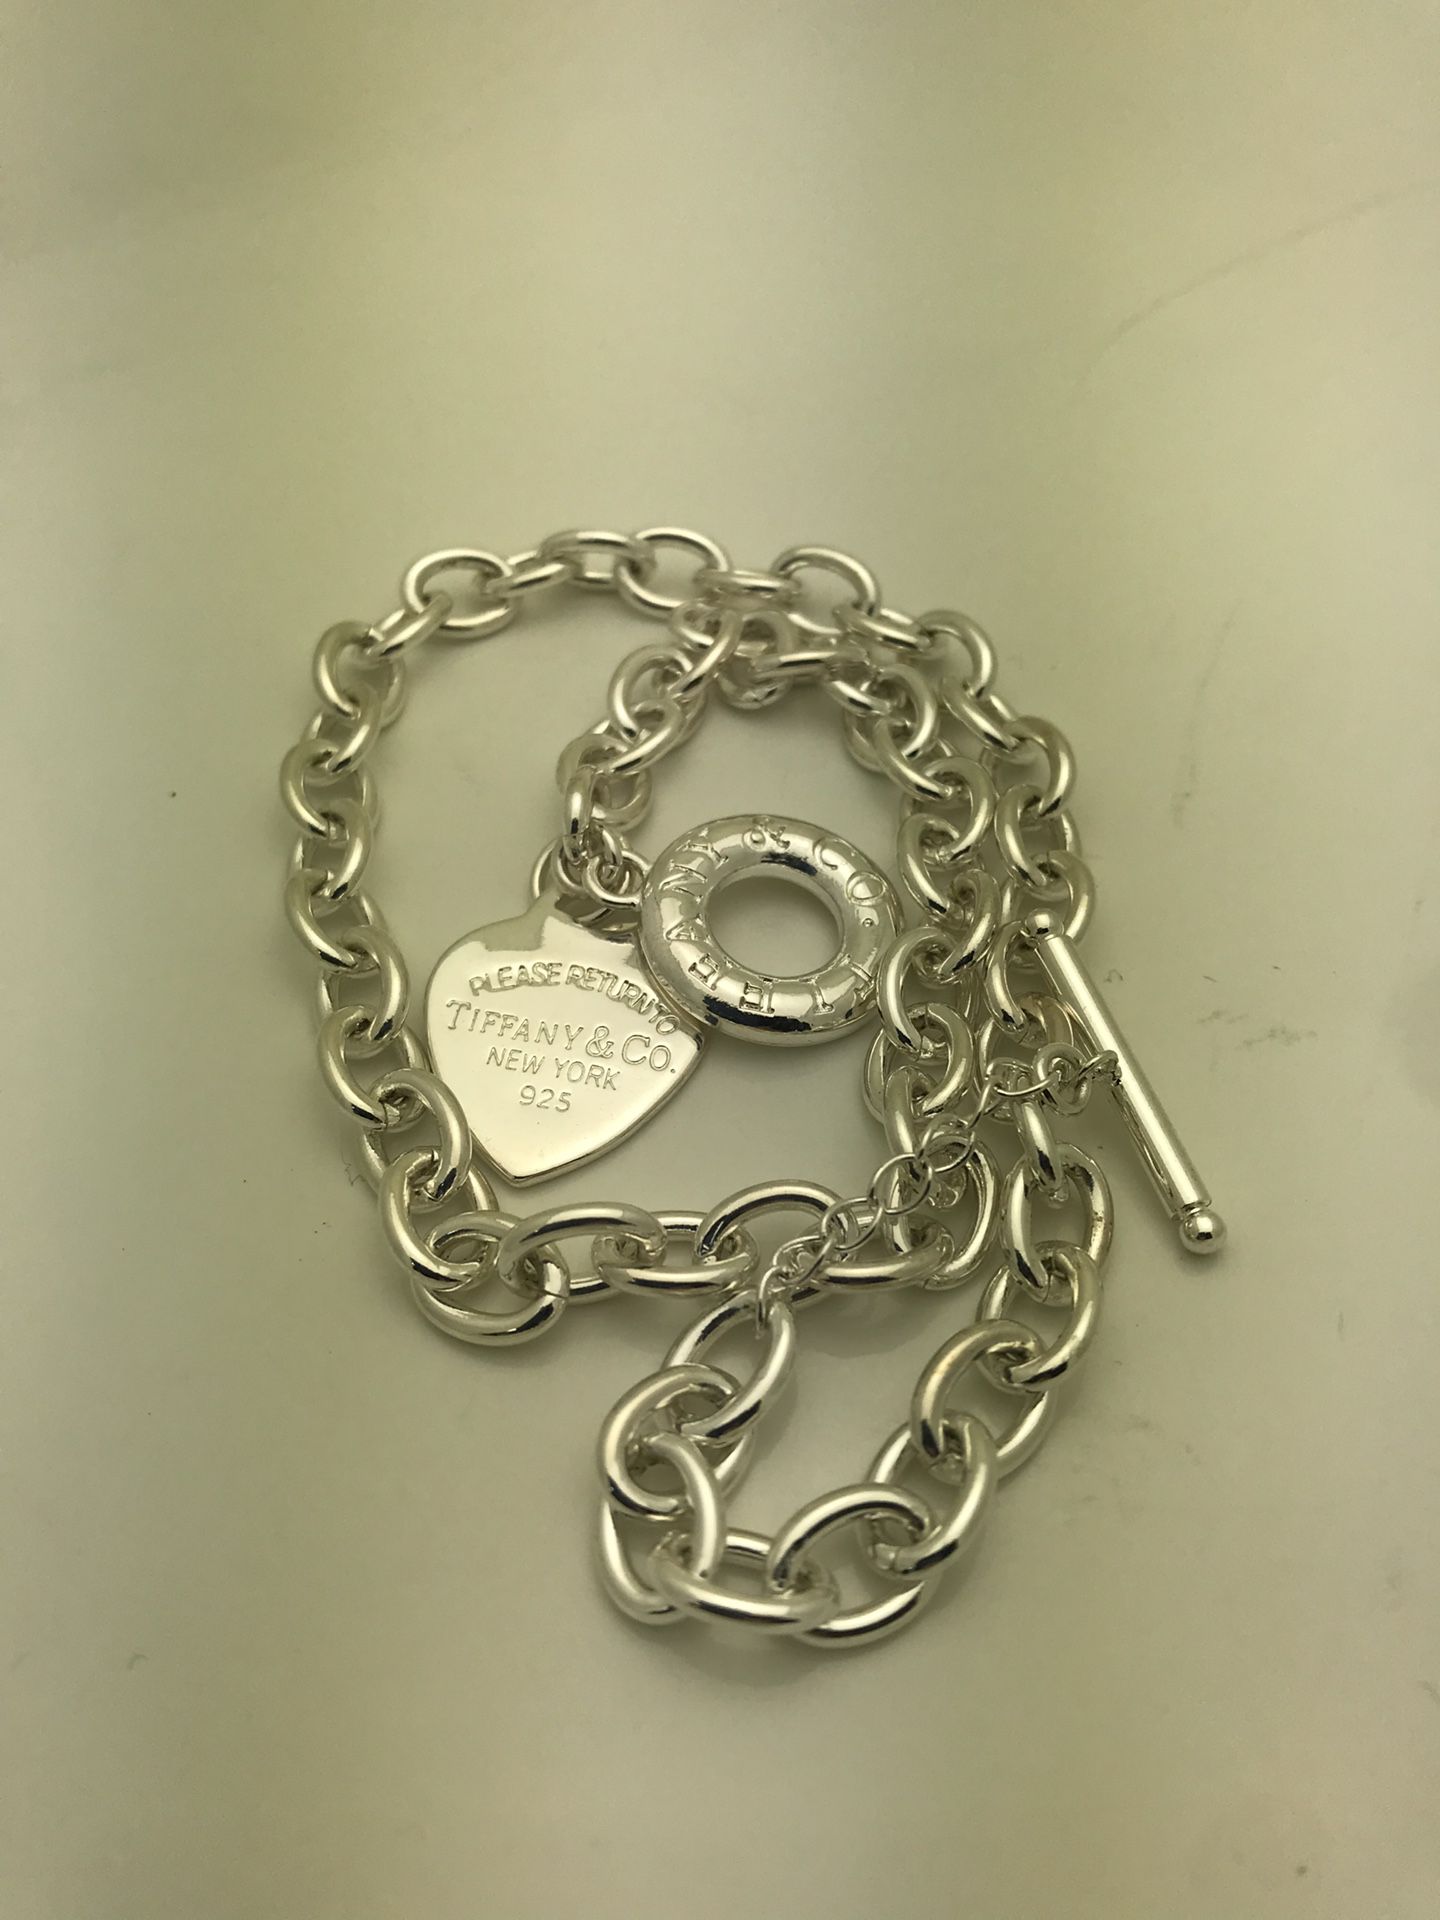 Tiffany&Co. Necklace 925 silver, 43.9 grams.